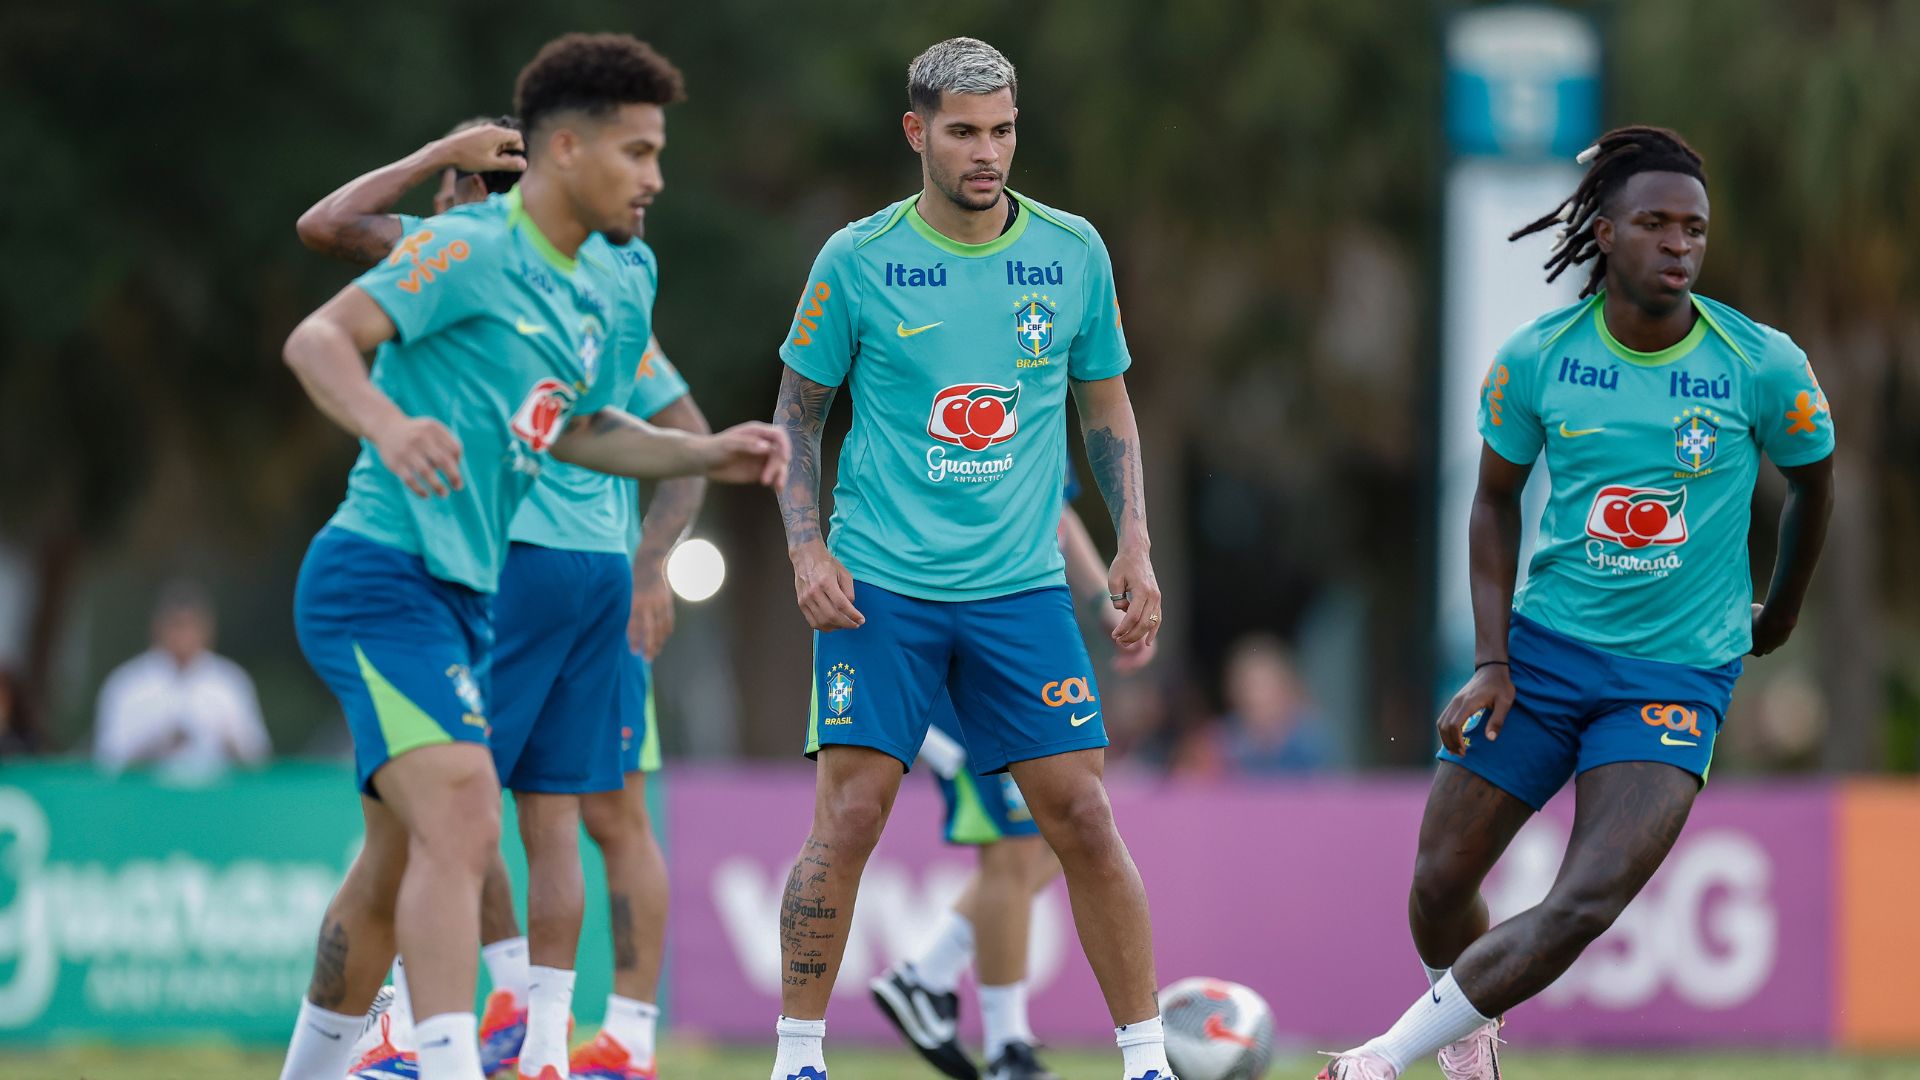 Bruno Guimarães during the Seleção training, alongside Vini Júnior and João Gomes (Credit: Rafael Ribeiro / CBF)